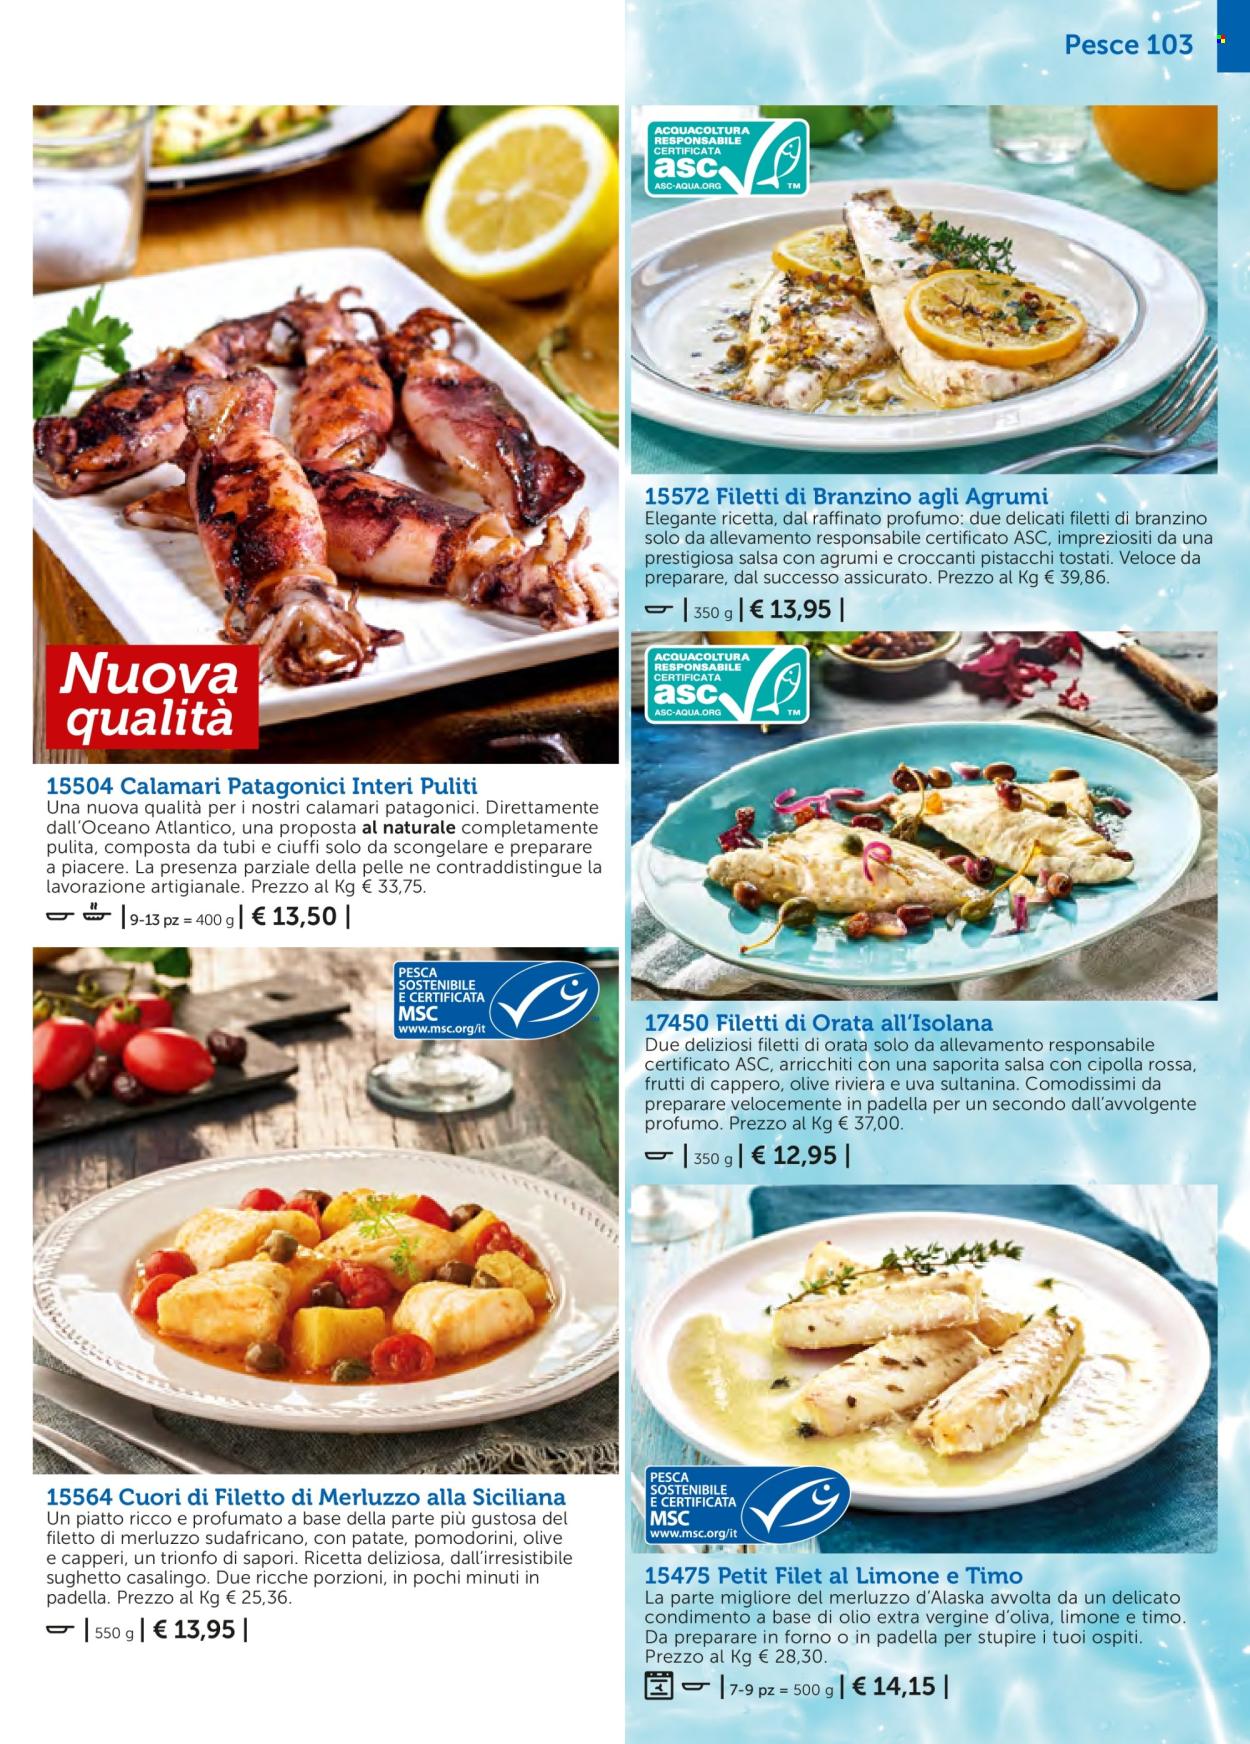 thumbnail - Volantino Bofrost - Prodotti in offerta - branzino, calamari, filetti di merluzzo, spigola, pesce, merluzzo, orata, filetti di branzino, olio extra vergine di oliva. Pagina 103.